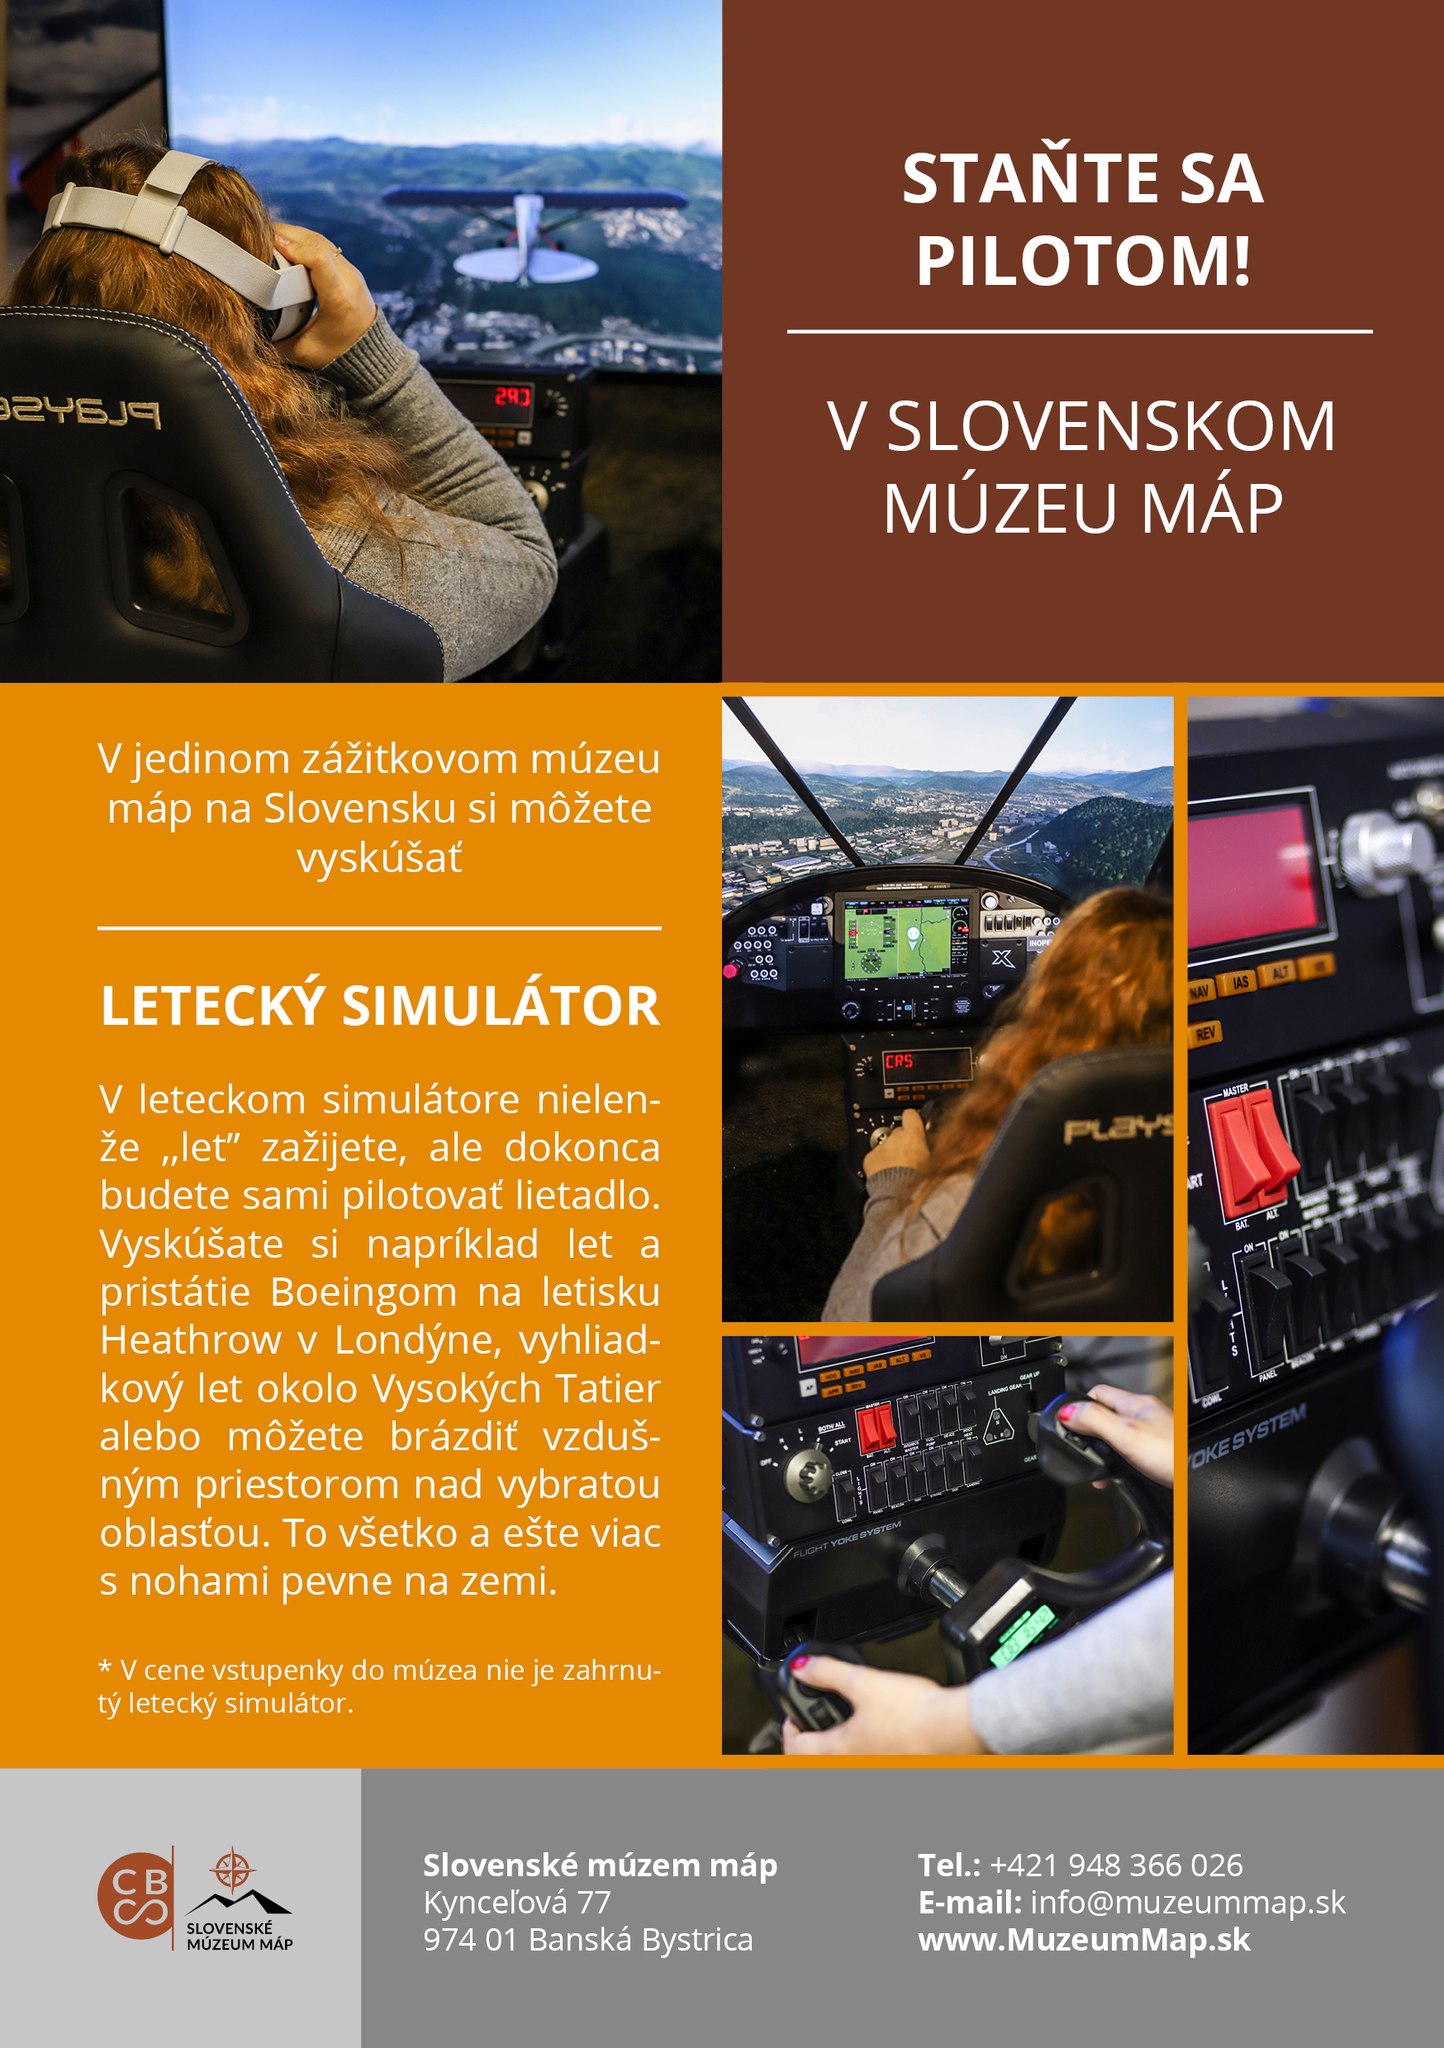 Stante sa pilotom! 2022 Kynceľová - v Slovenskom múzeu máp